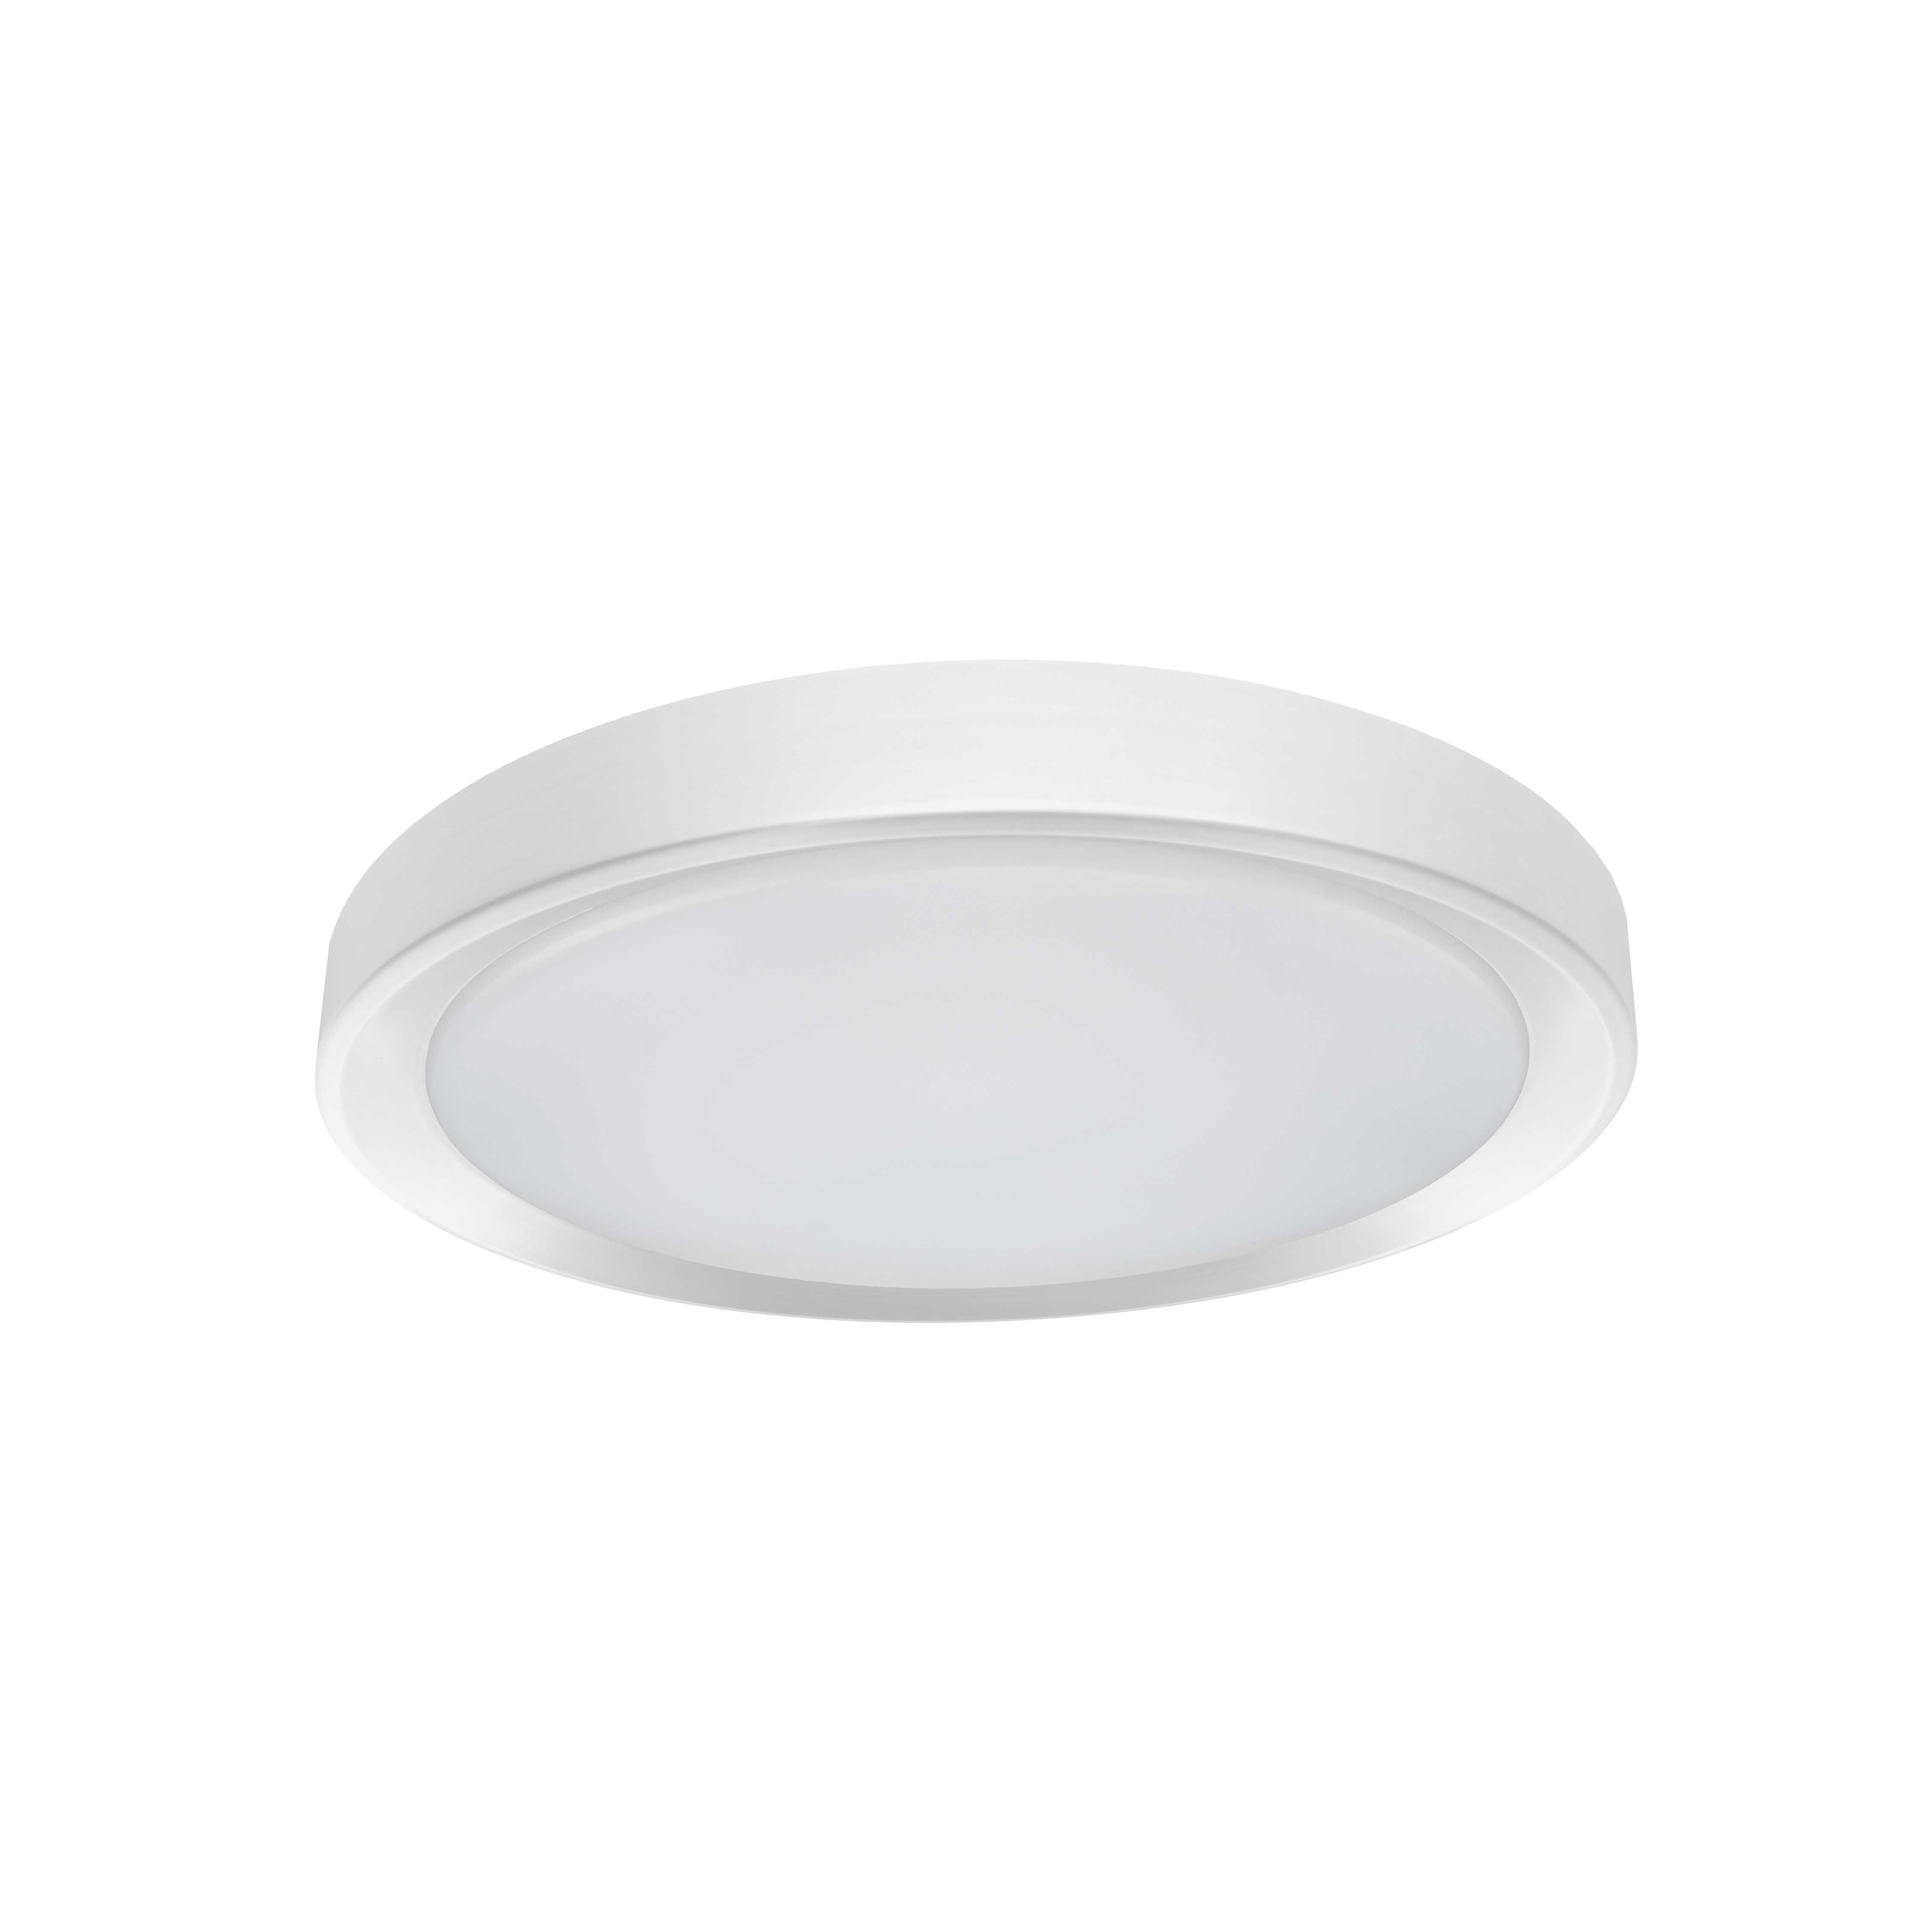 FLYNN Flush mount  White INTEGRATED LED - FYN-1224LEDFH-MW | DAINOLITE